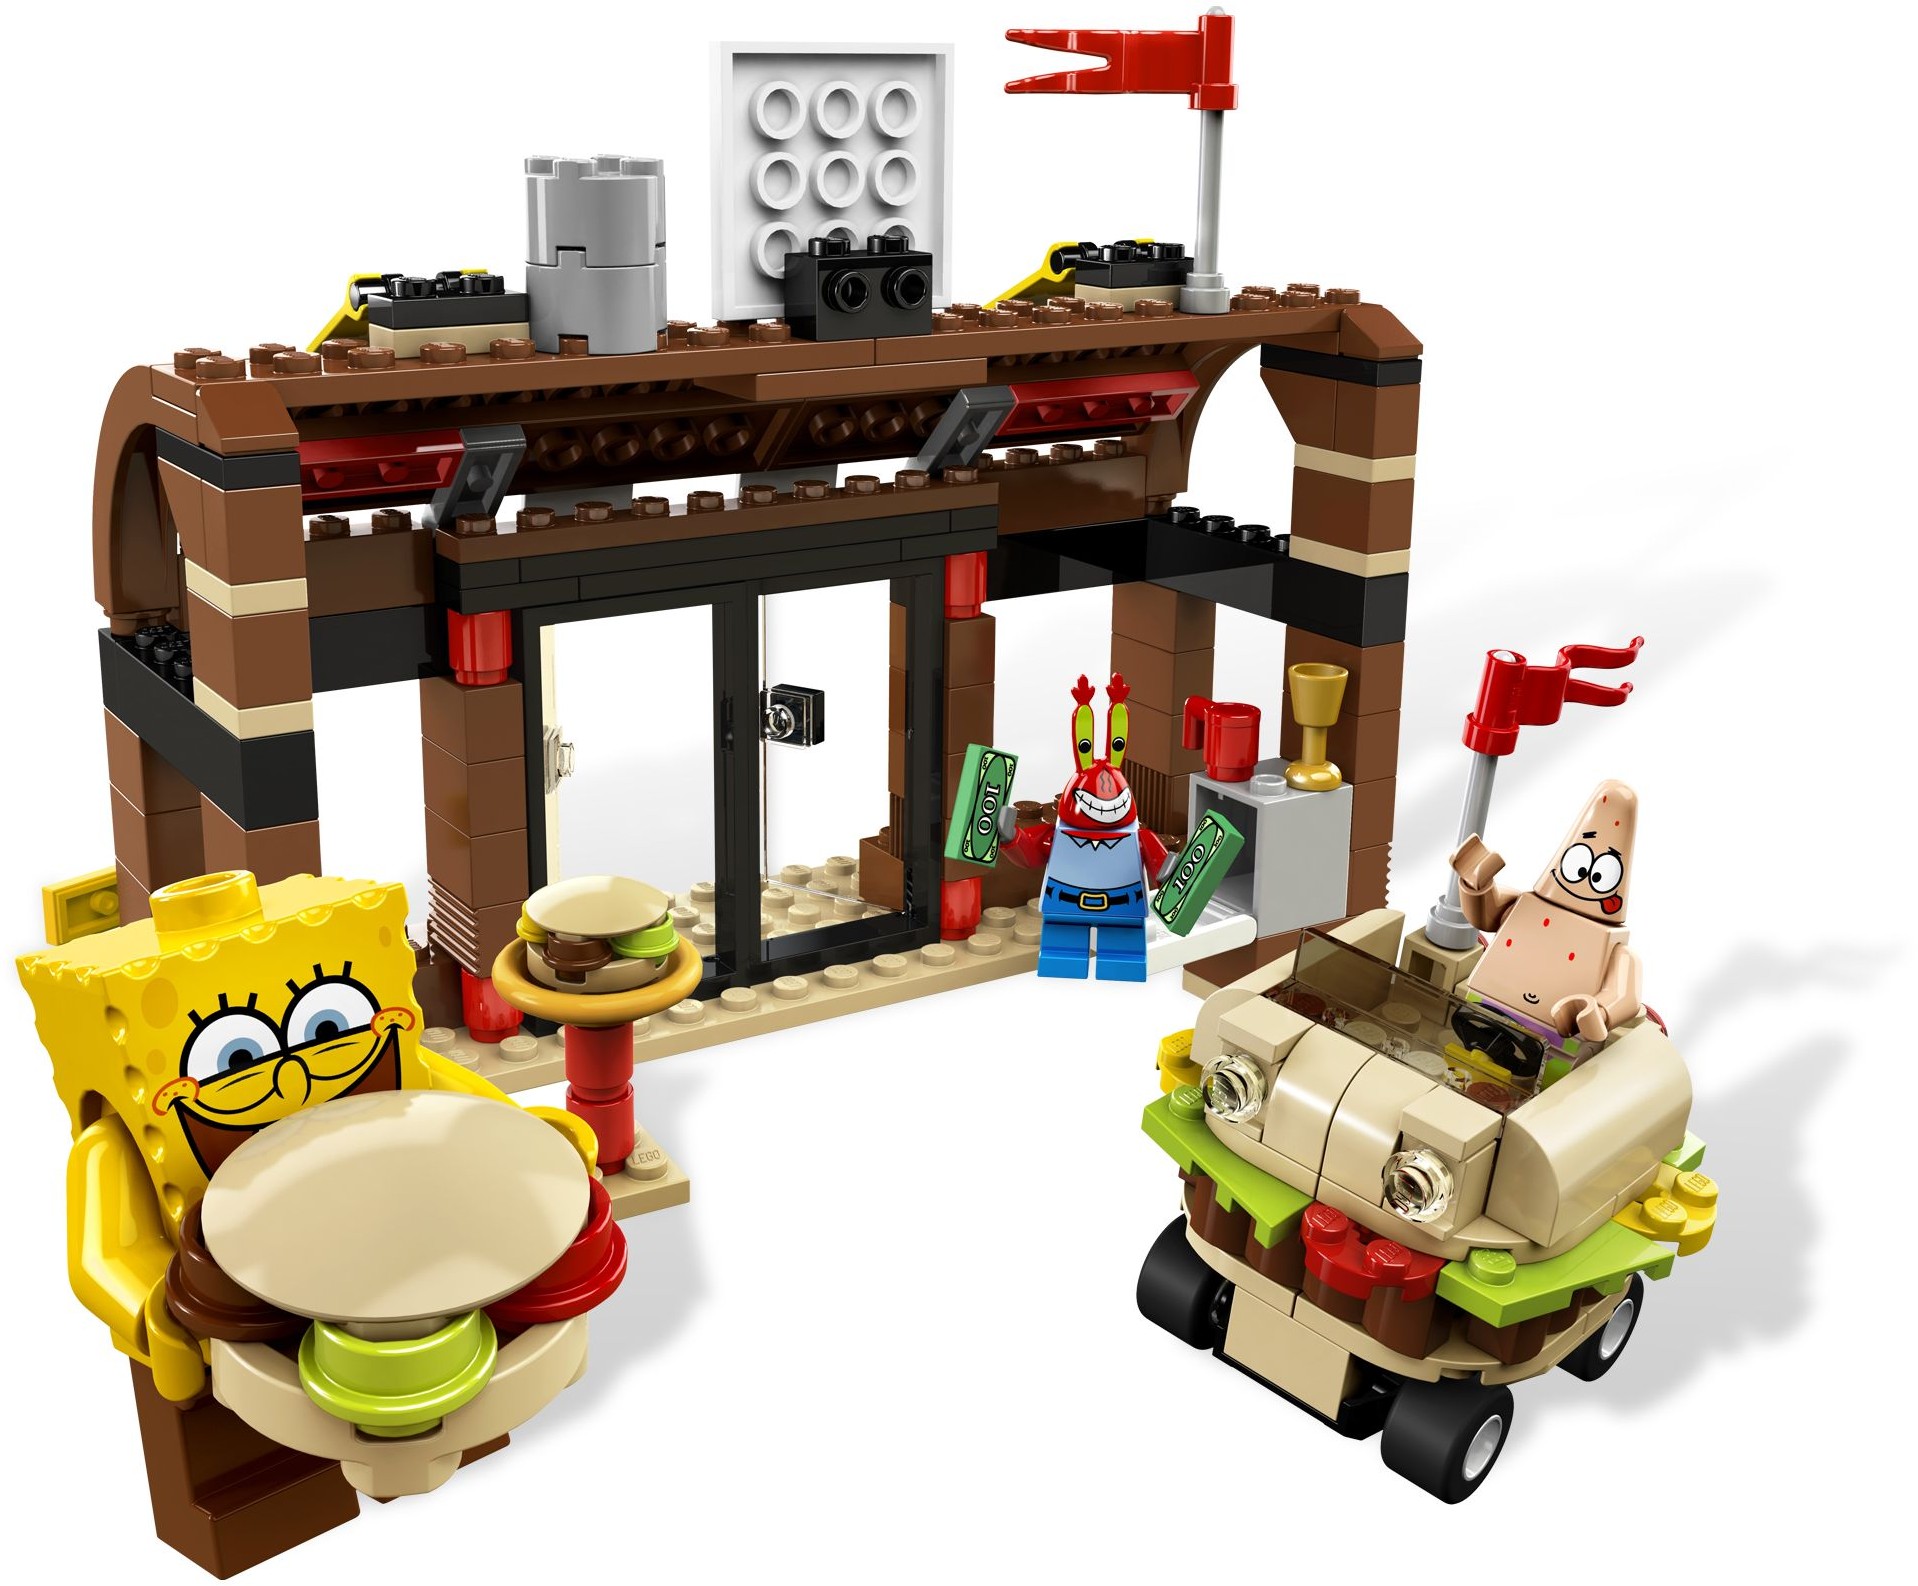 Abenteuer in der Krossen Krabbe Lego Spongebob aus Set 3833